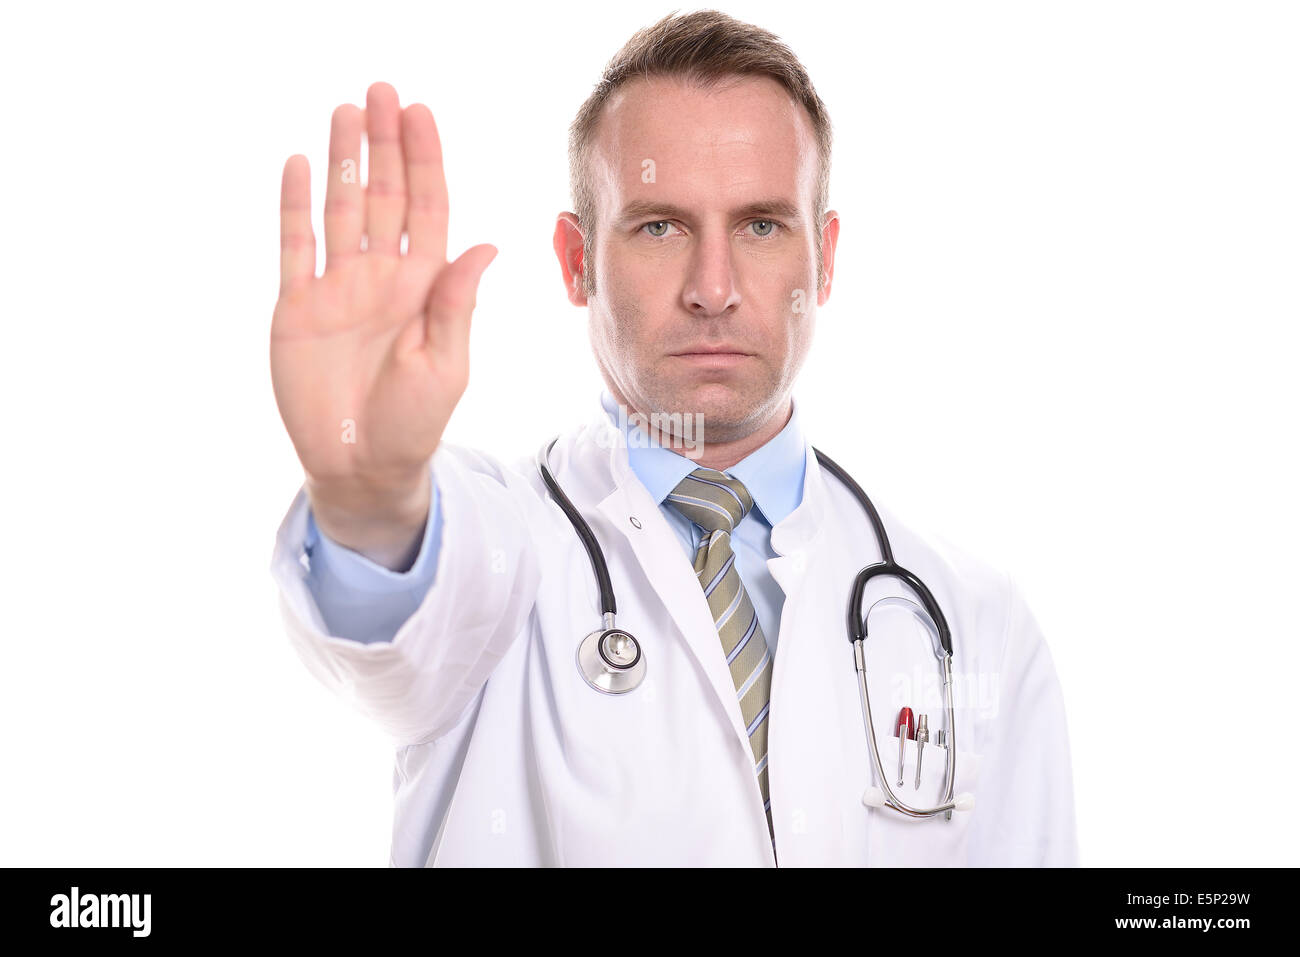 Médecin ou infirmier portant un manteau de laboratoire levant la main dans un geste d'arrêt avec une expression implacable stern Banque D'Images